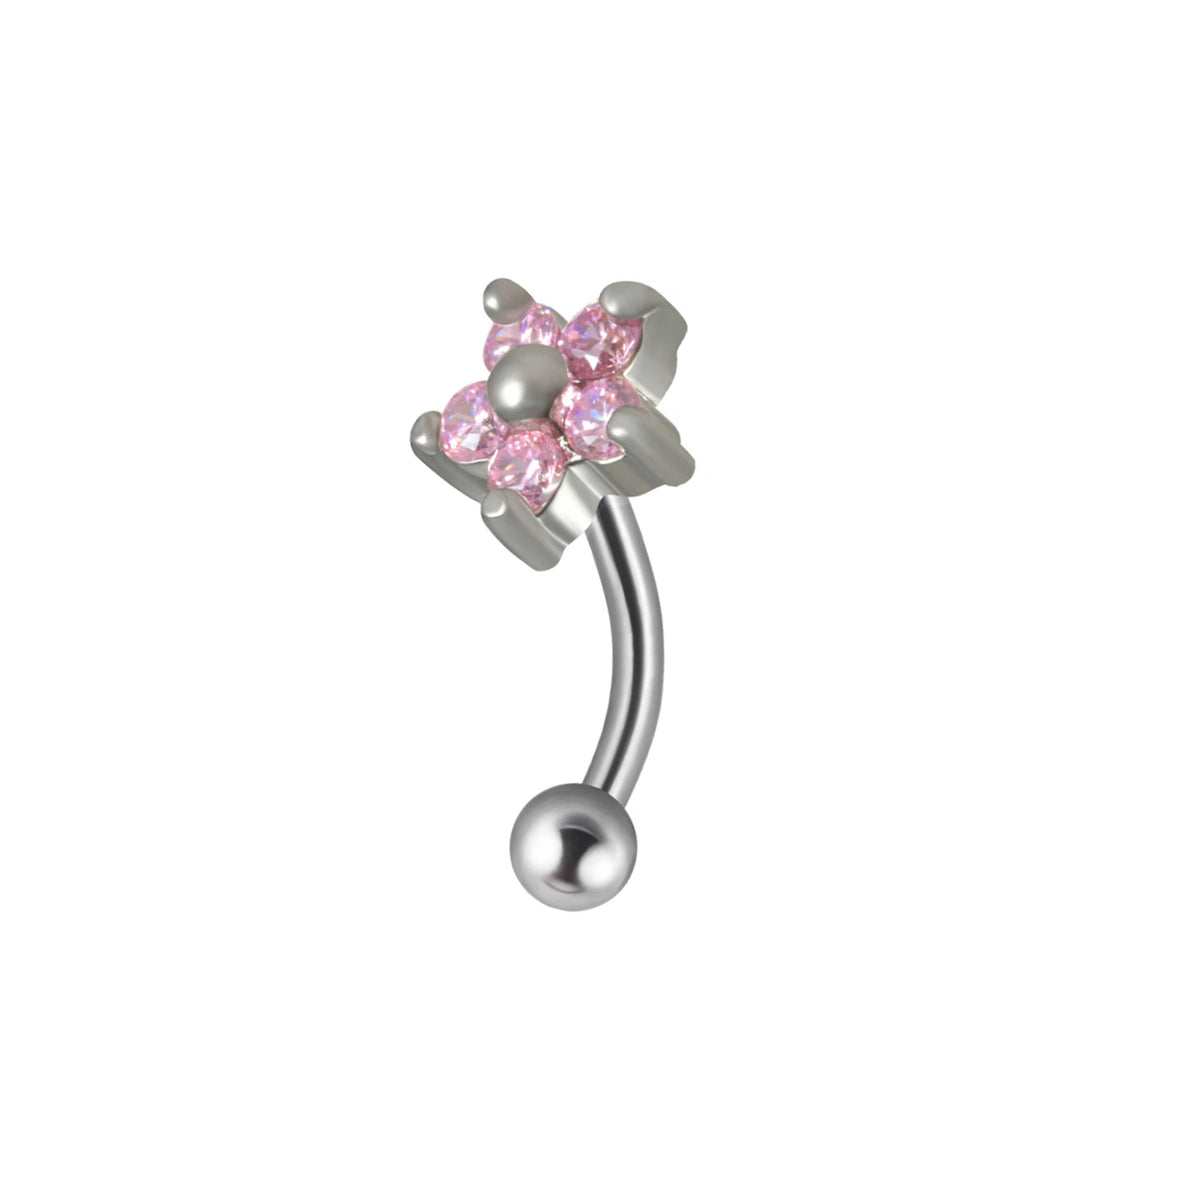 Niedliches Jestrum-Piercing mit gebogenem Titan-Stab in klarem rosafarbenem Regenbogendiamant